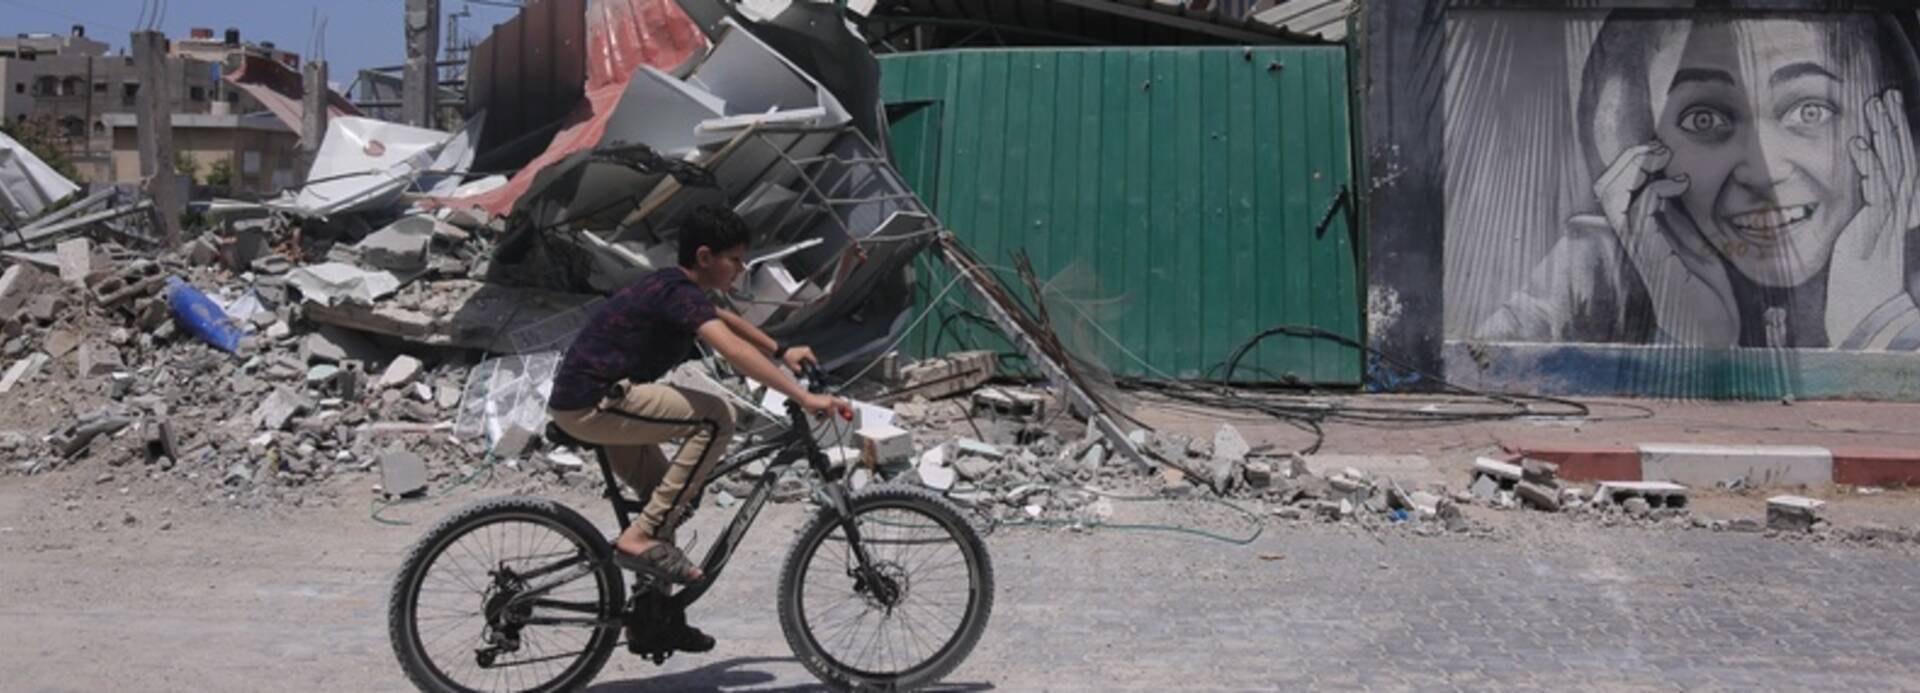 Junge fährt Fahrrad in zerstörtem Gaza